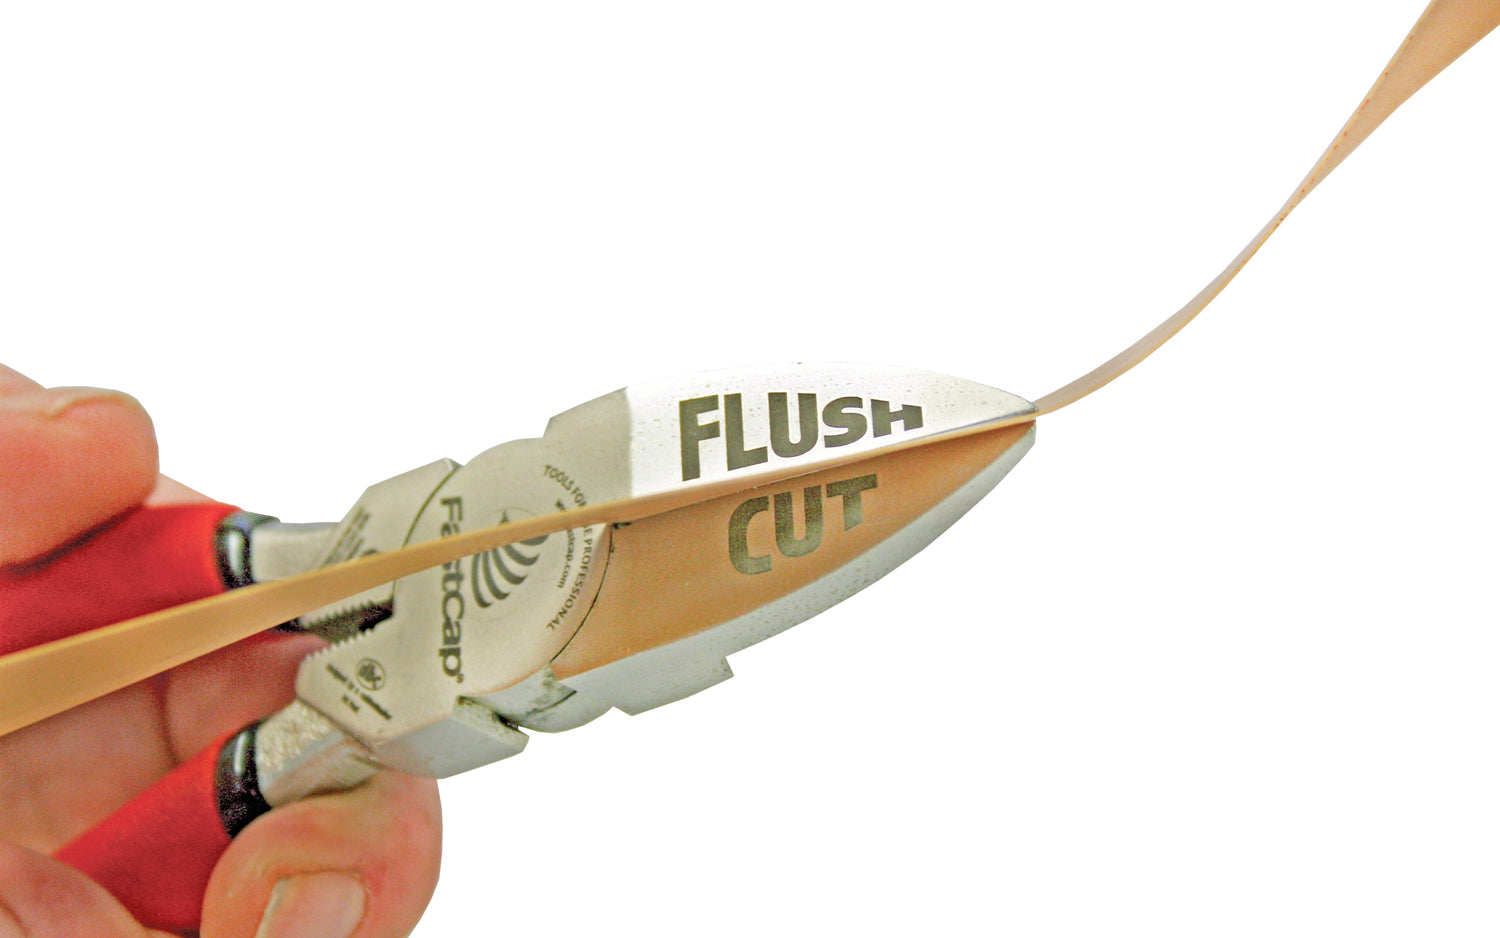 FastCap Macro Flush Cut Trimmers